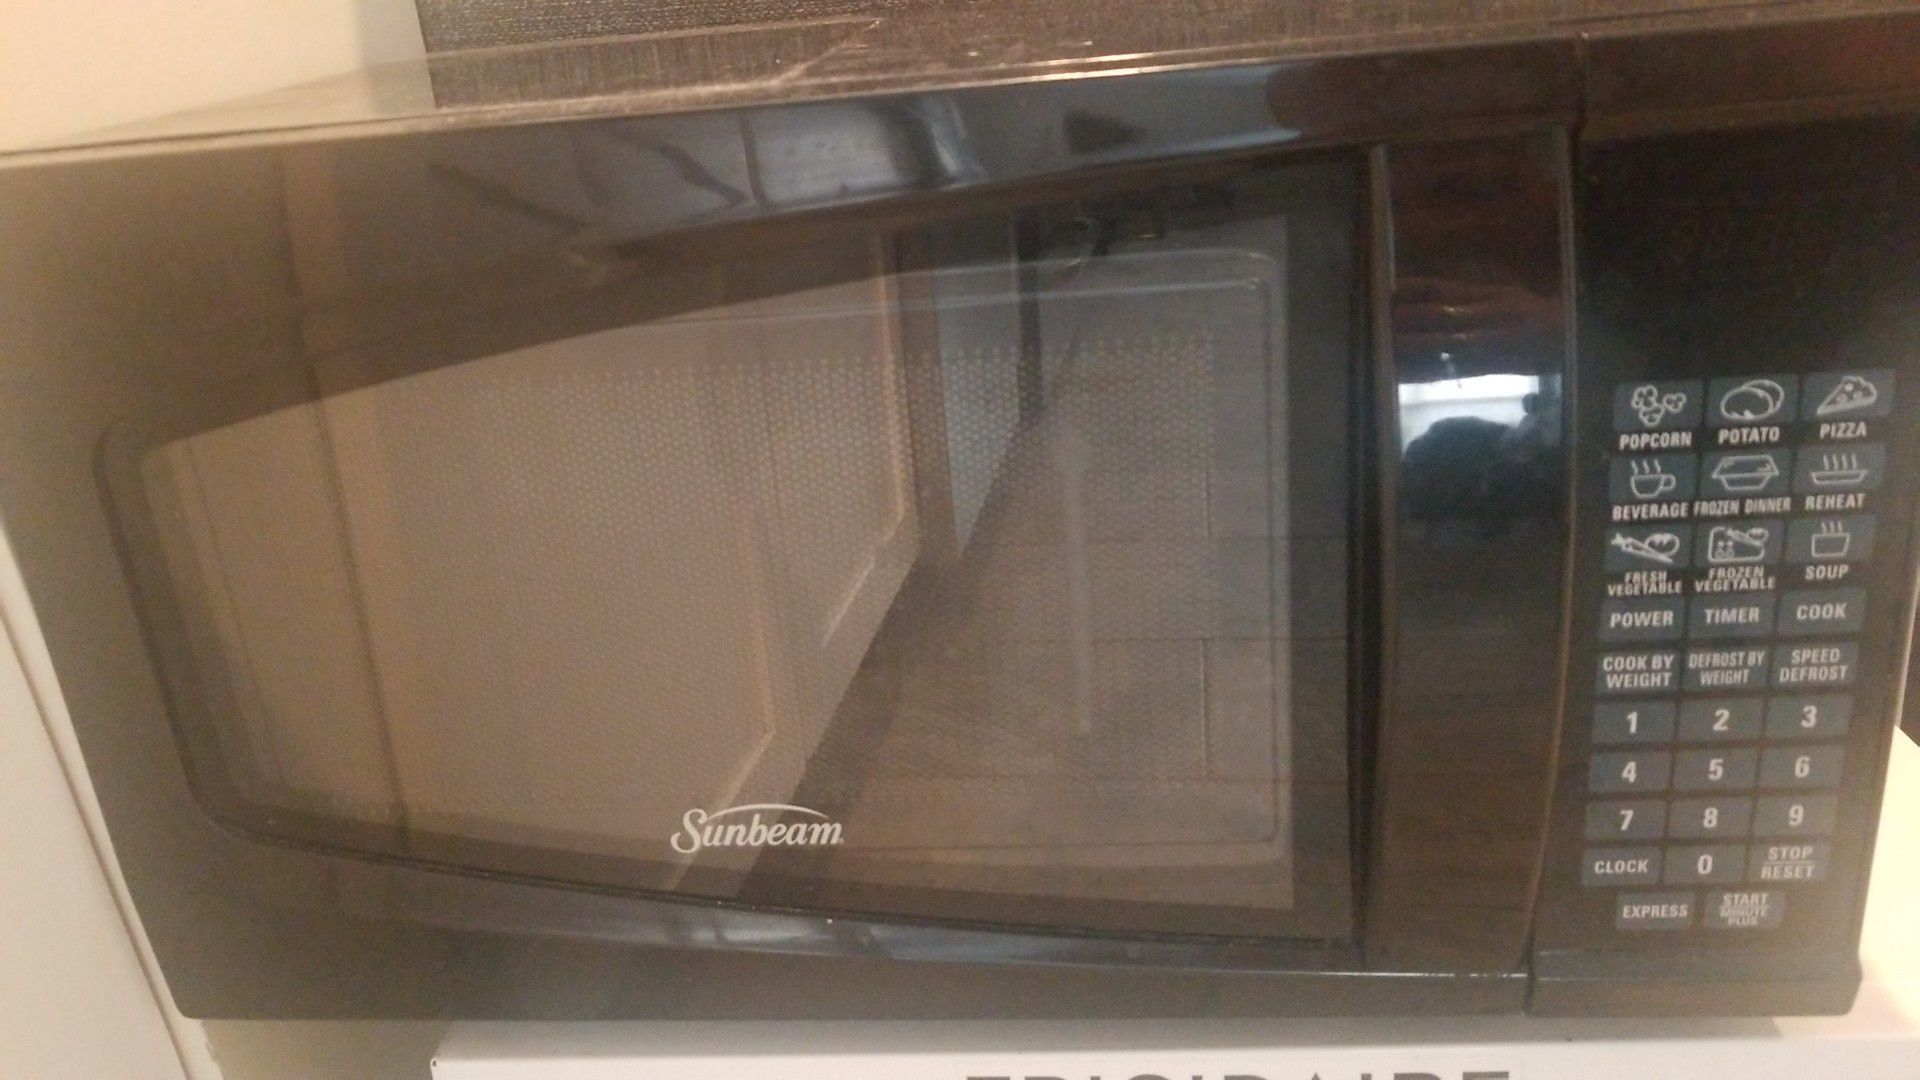 Sunbeam microwave